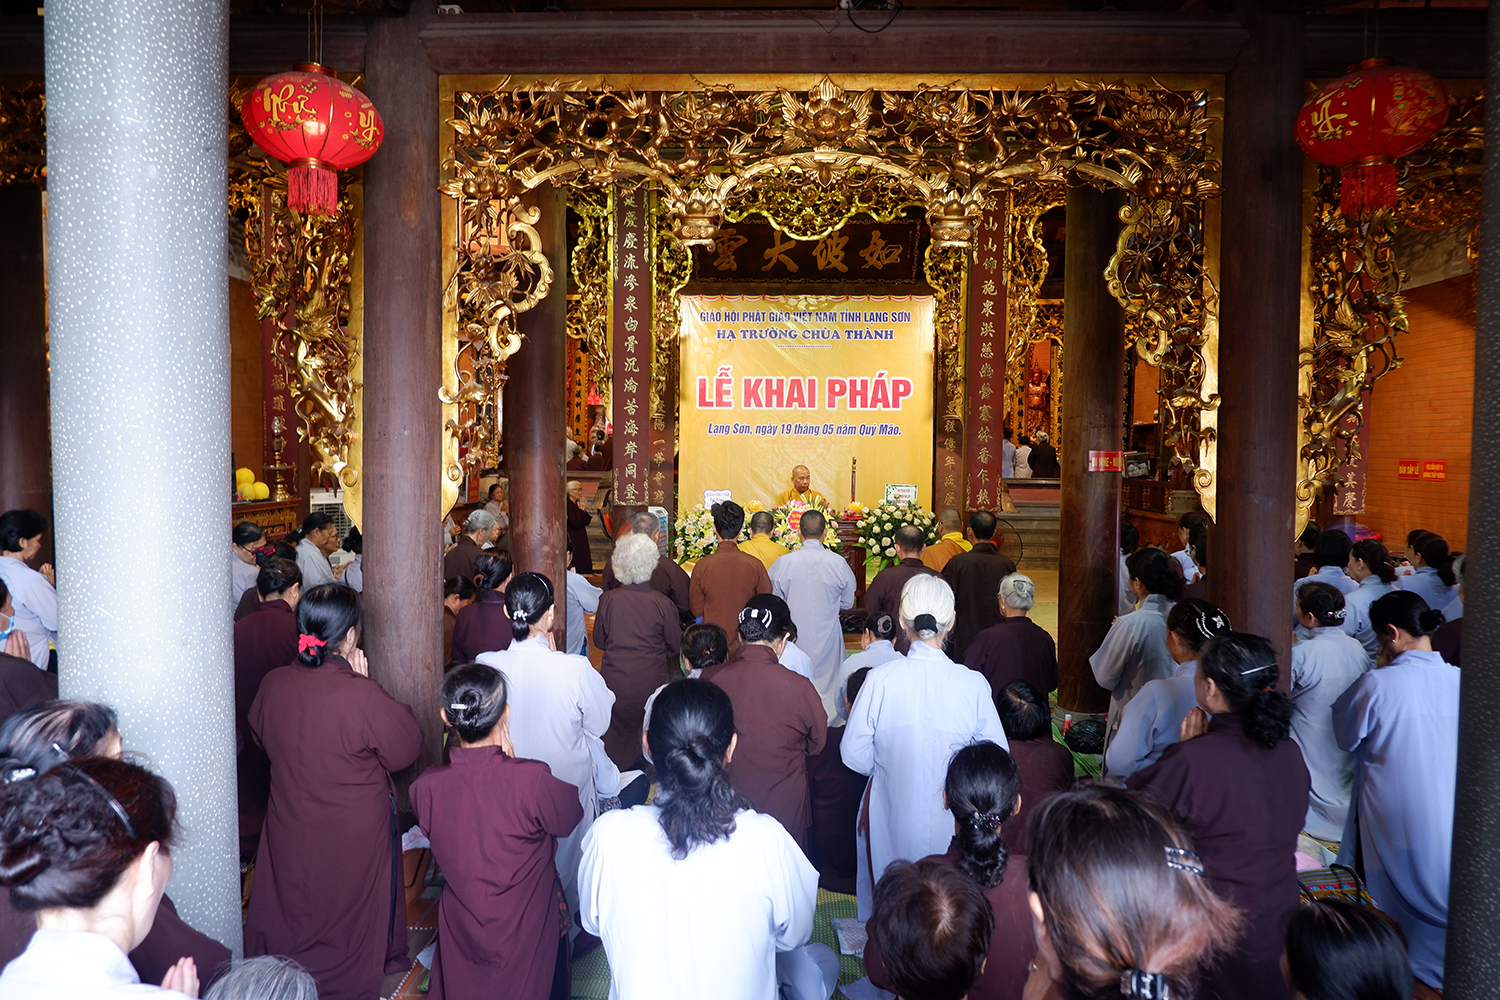 Lạng Sơn: Hạ trường chùa Thành tổ chức Lễ Khai pháp